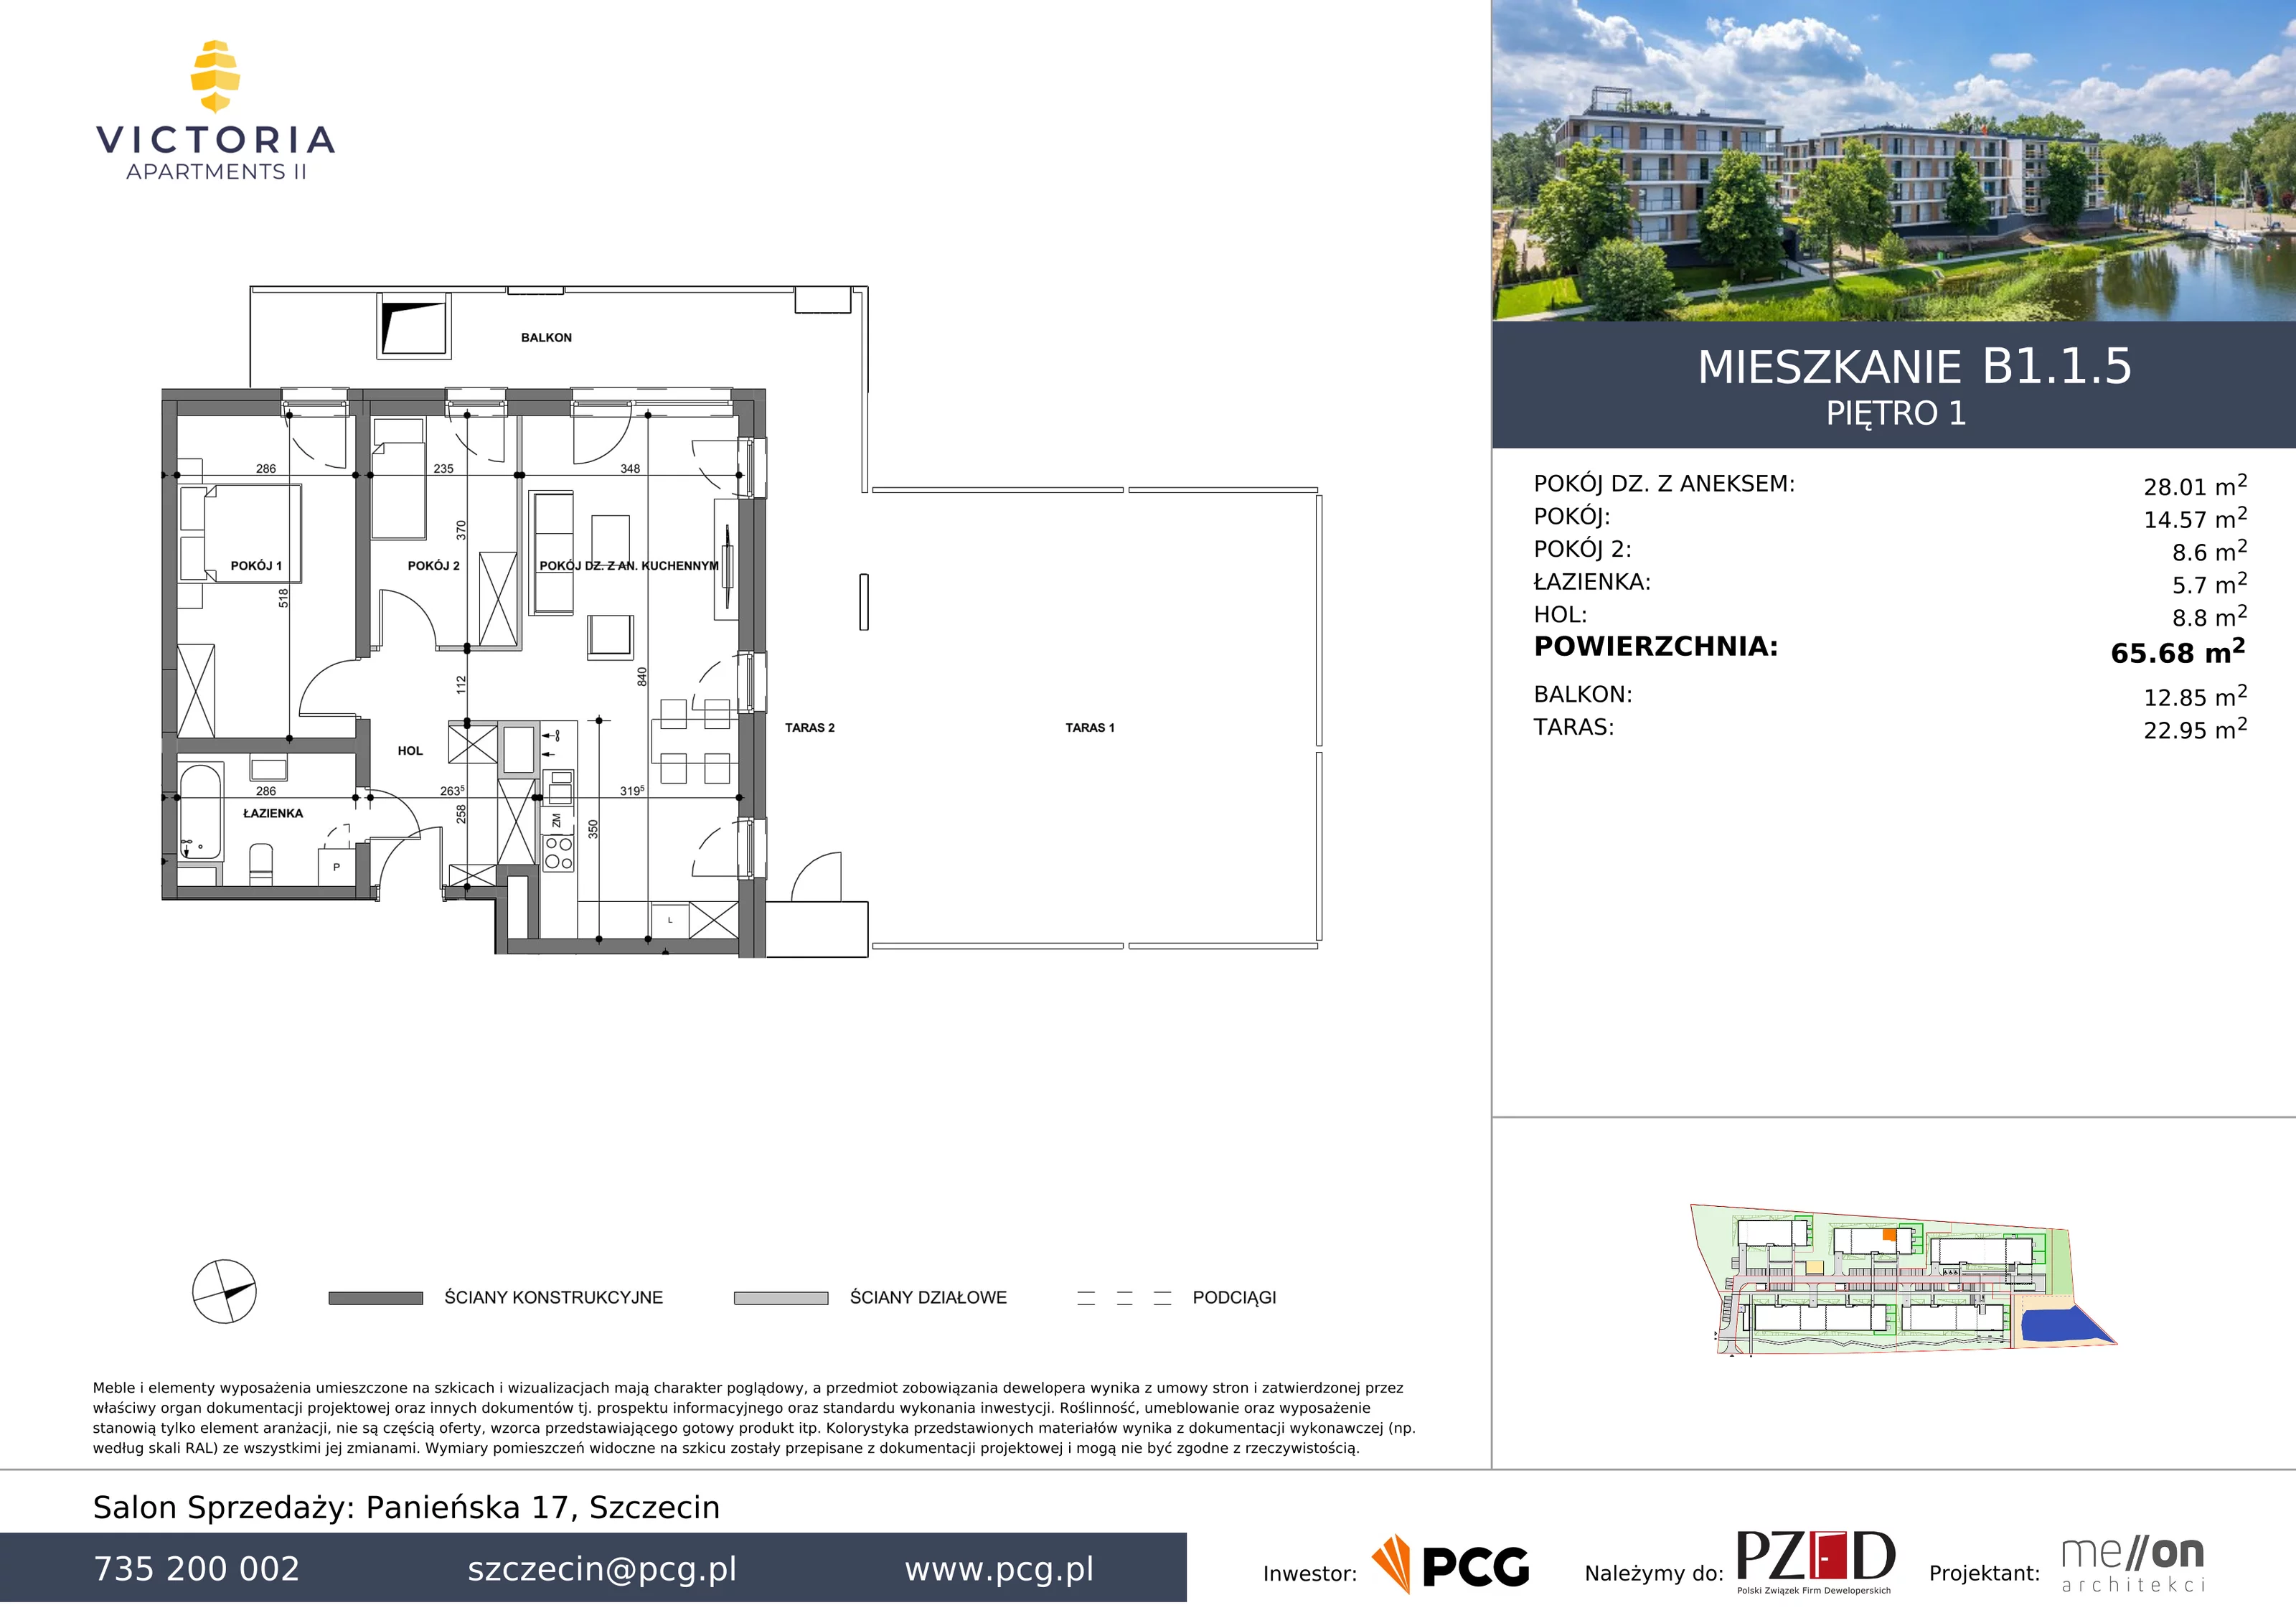 Apartament 65,68 m², piętro 1, oferta nr B1.1.5, Victoria Apartments II, Szczecin, Prawobrzeże, Dąbie, ul. Przestrzenna